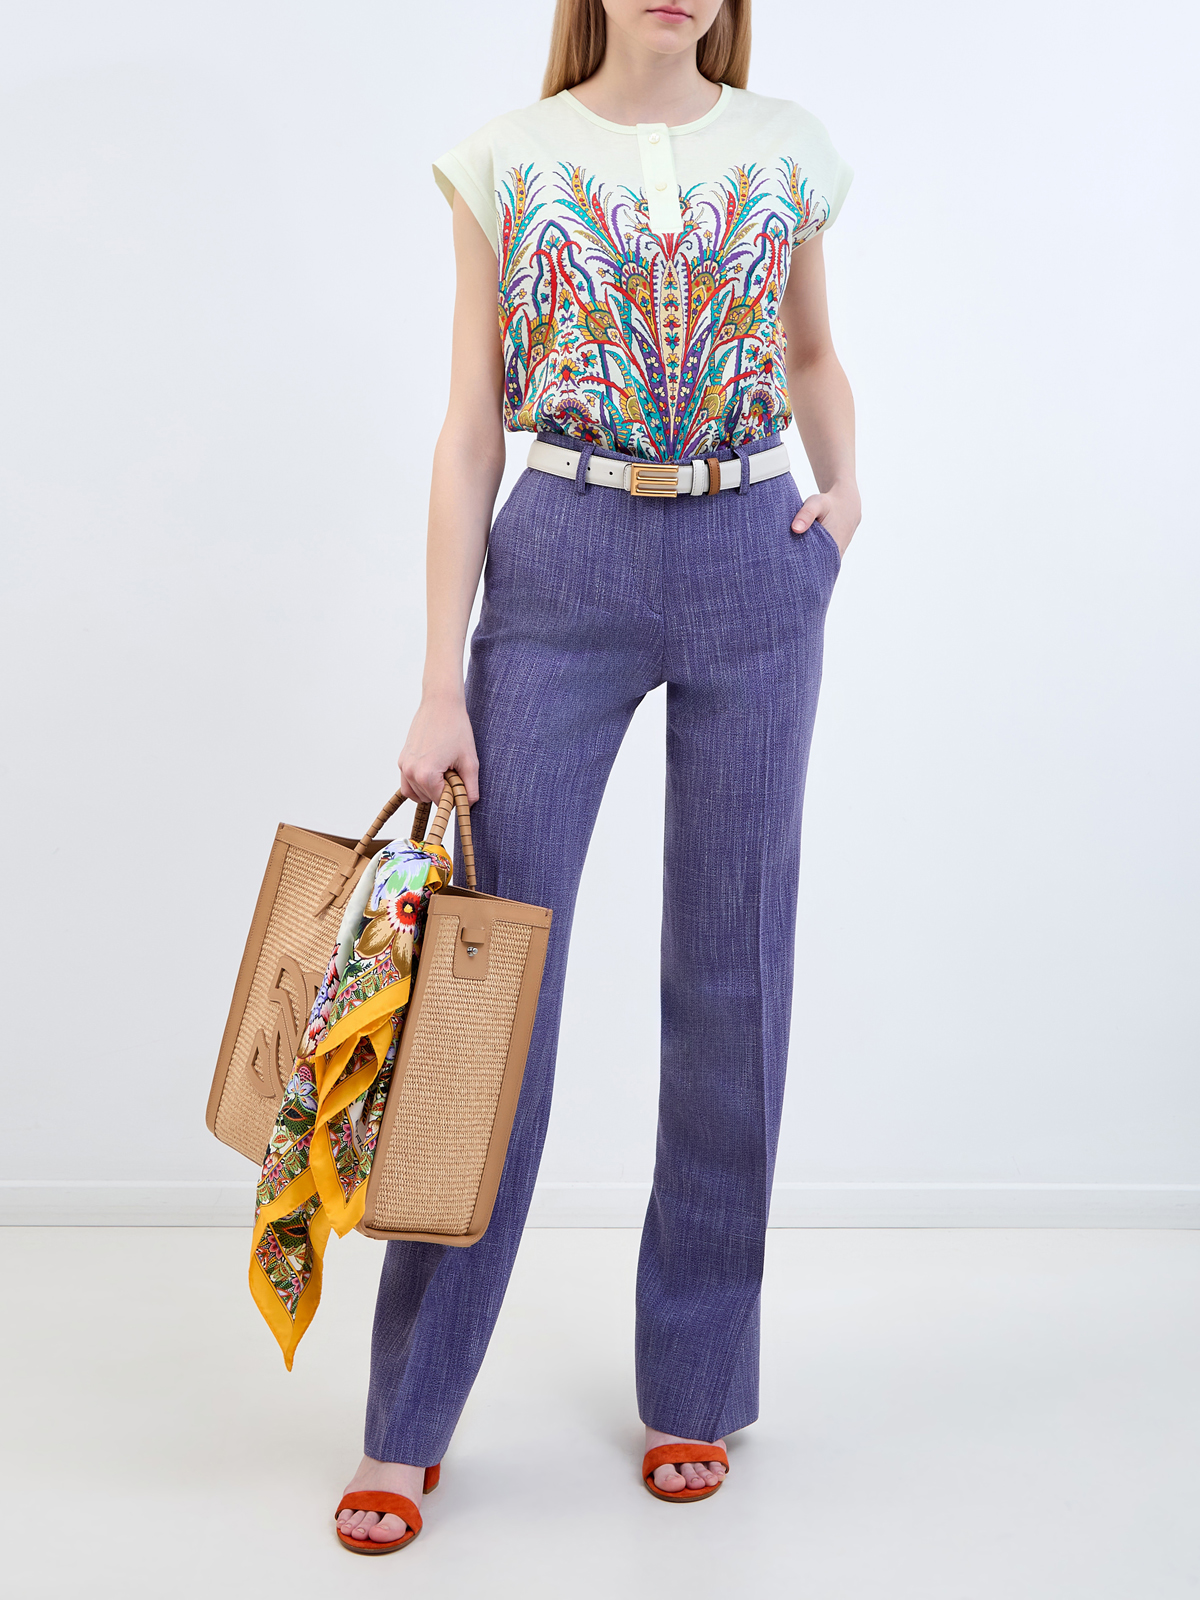 Хлопковая блуза с флористическим принтом и застежкой на пуговицы ETRO, цвет мульти, размер 40;42;44 - фото 2